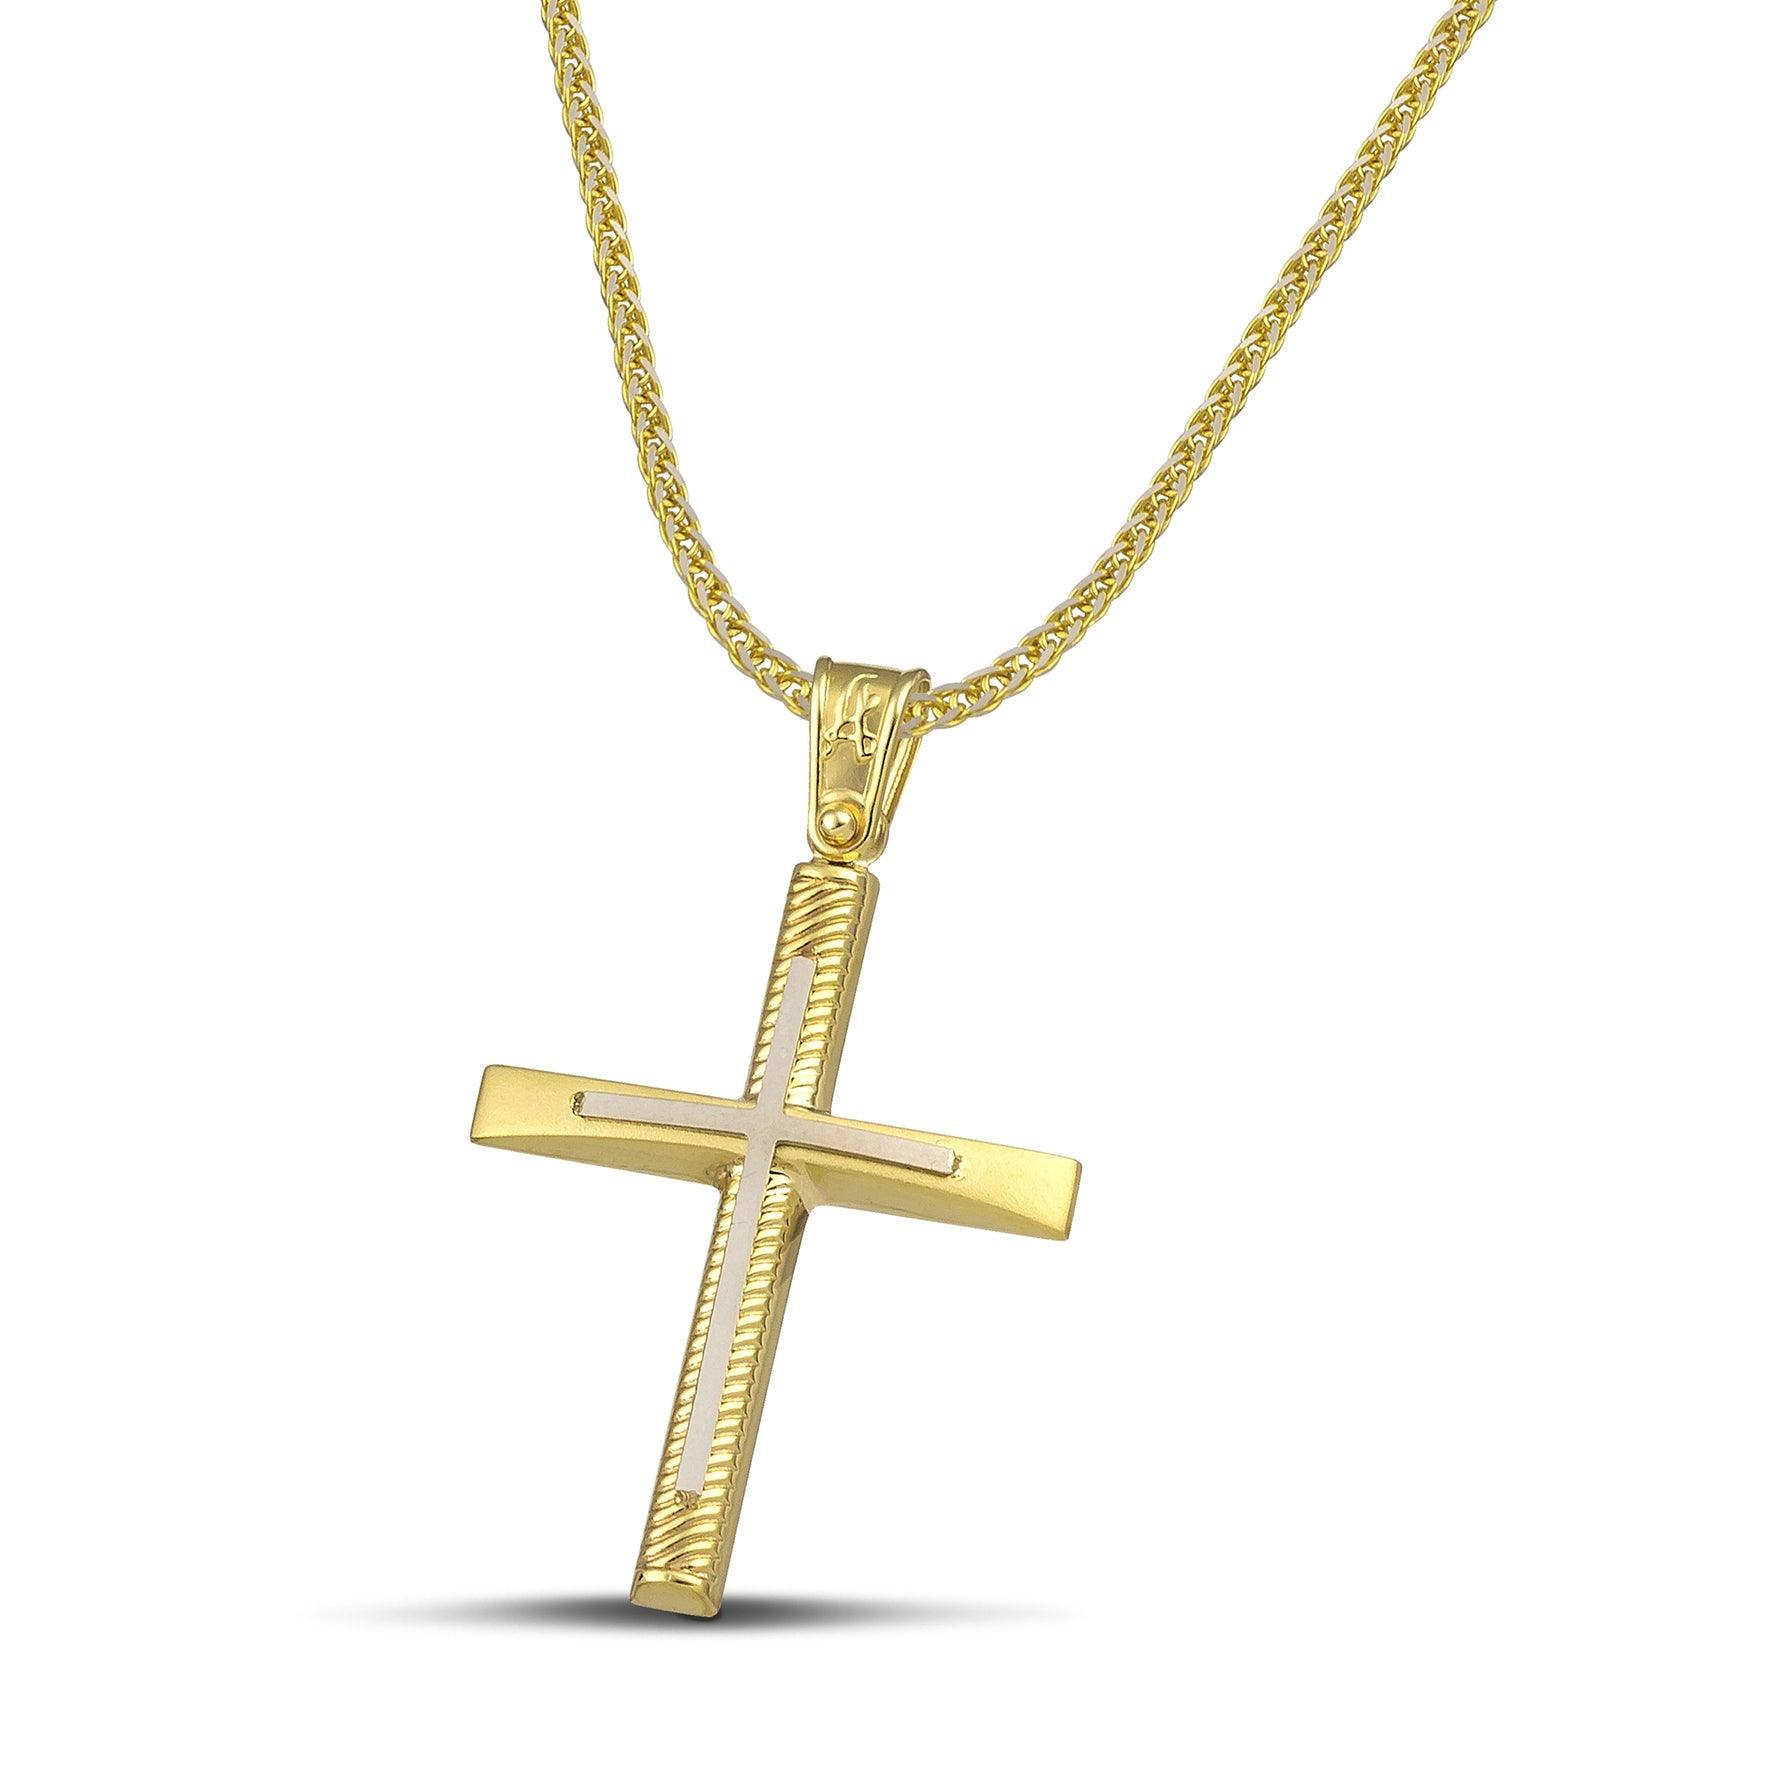 Σταυρός βάπτισης χρυσός Κ14 για γυναίκα. Διαθέτει σκαλιστά σχέδια και λευκόχρυσο σταυρό, με πυκνή αλυσίδα.